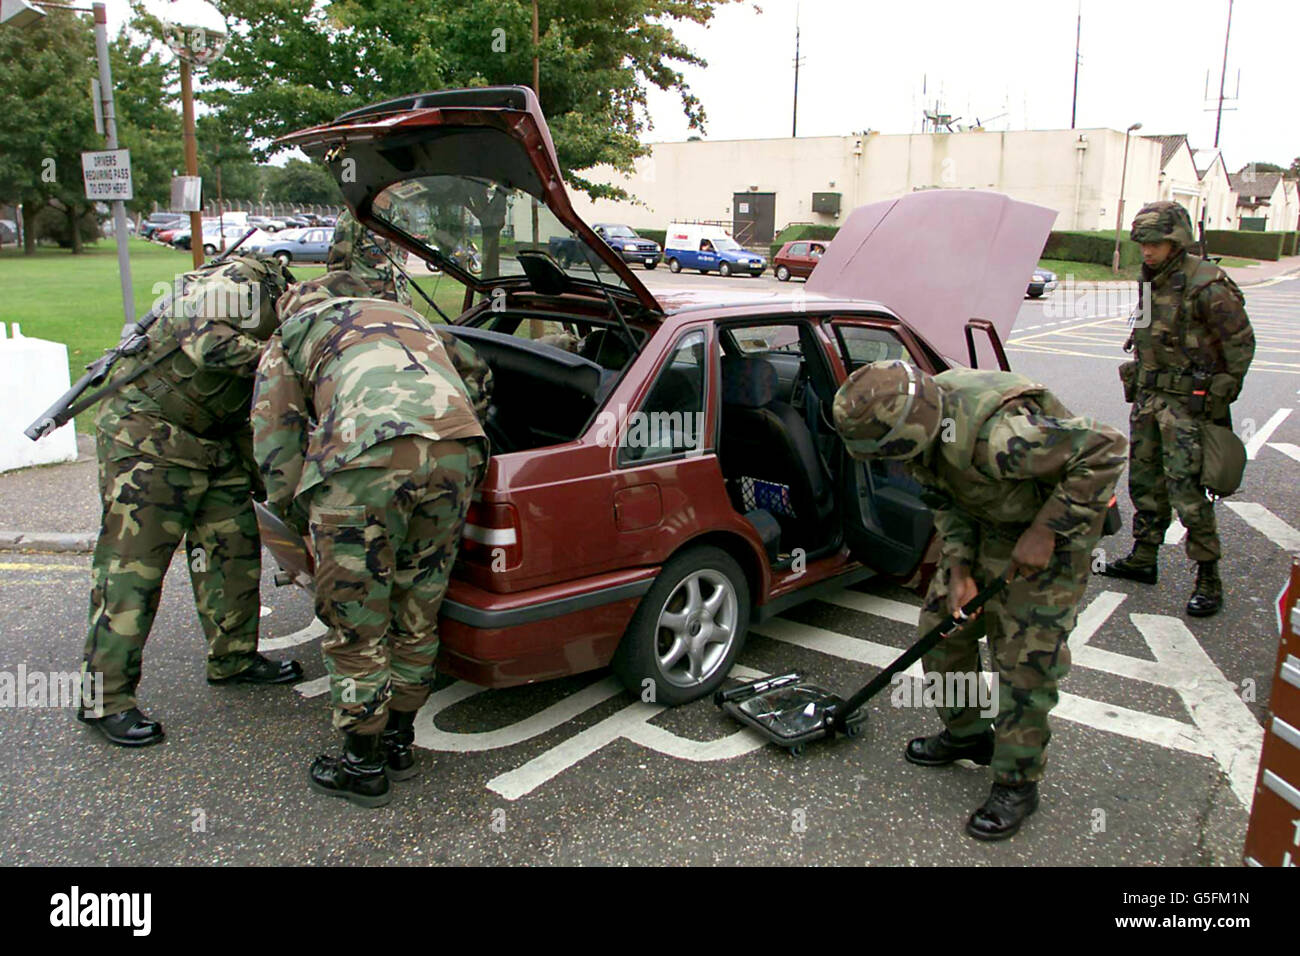 US-Militärangehörige durchsuchen jedes Fahrzeug, das nach den Ereignissen in New York in R.A.F Mildenhall, Suffolk einfährt, um die Sicherheit zu erhöhen. Stockfoto